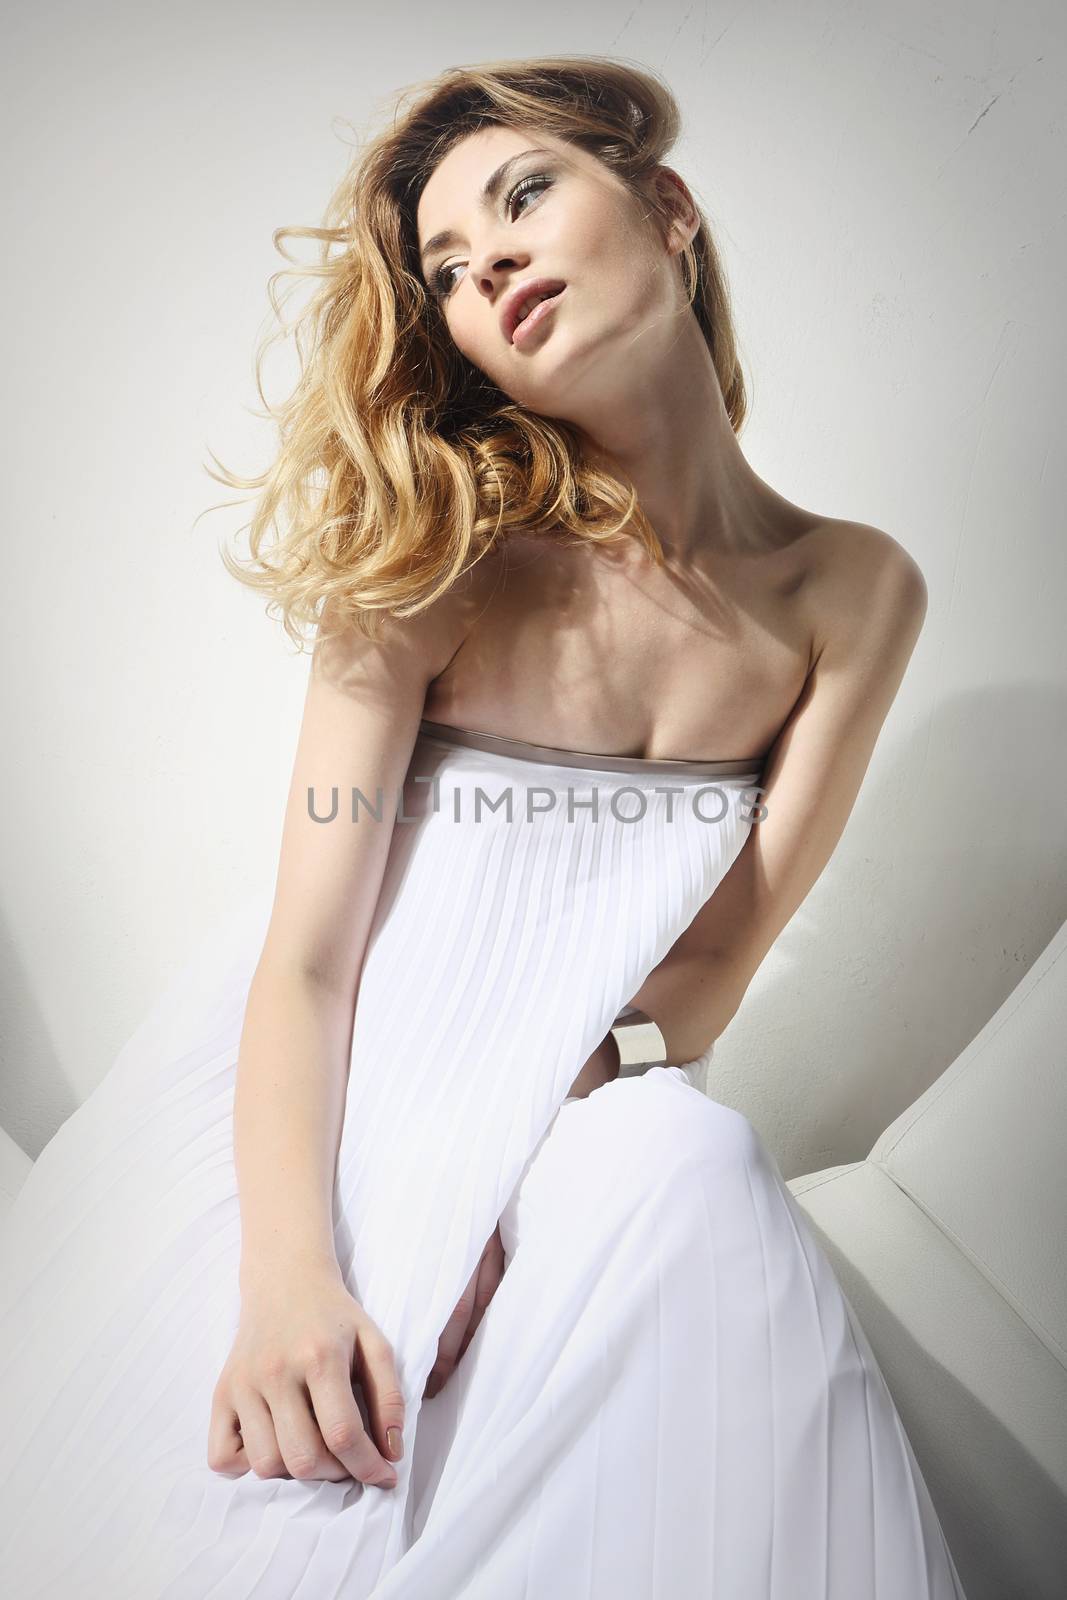 Beautiful lady in a white gauzy dress